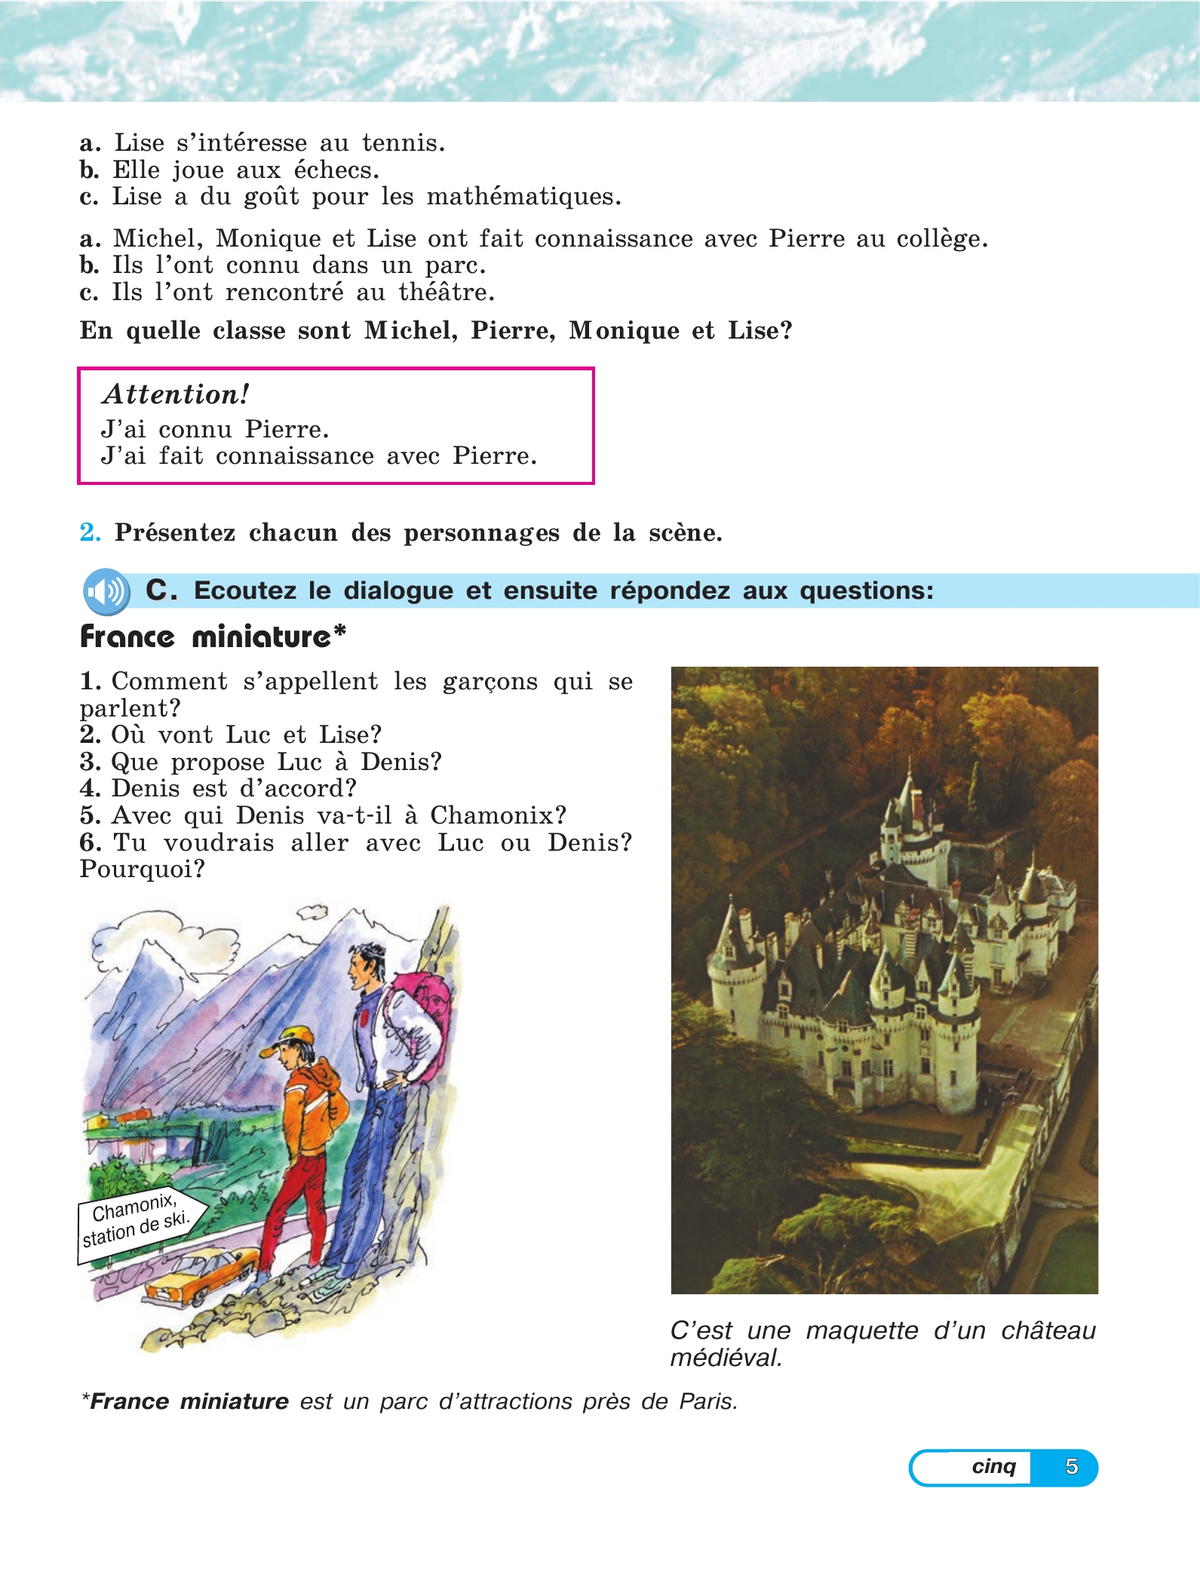 Французский язык. 5 класс. Углублённый уровень. Учебник. В 2 ч. Часть 1. 4